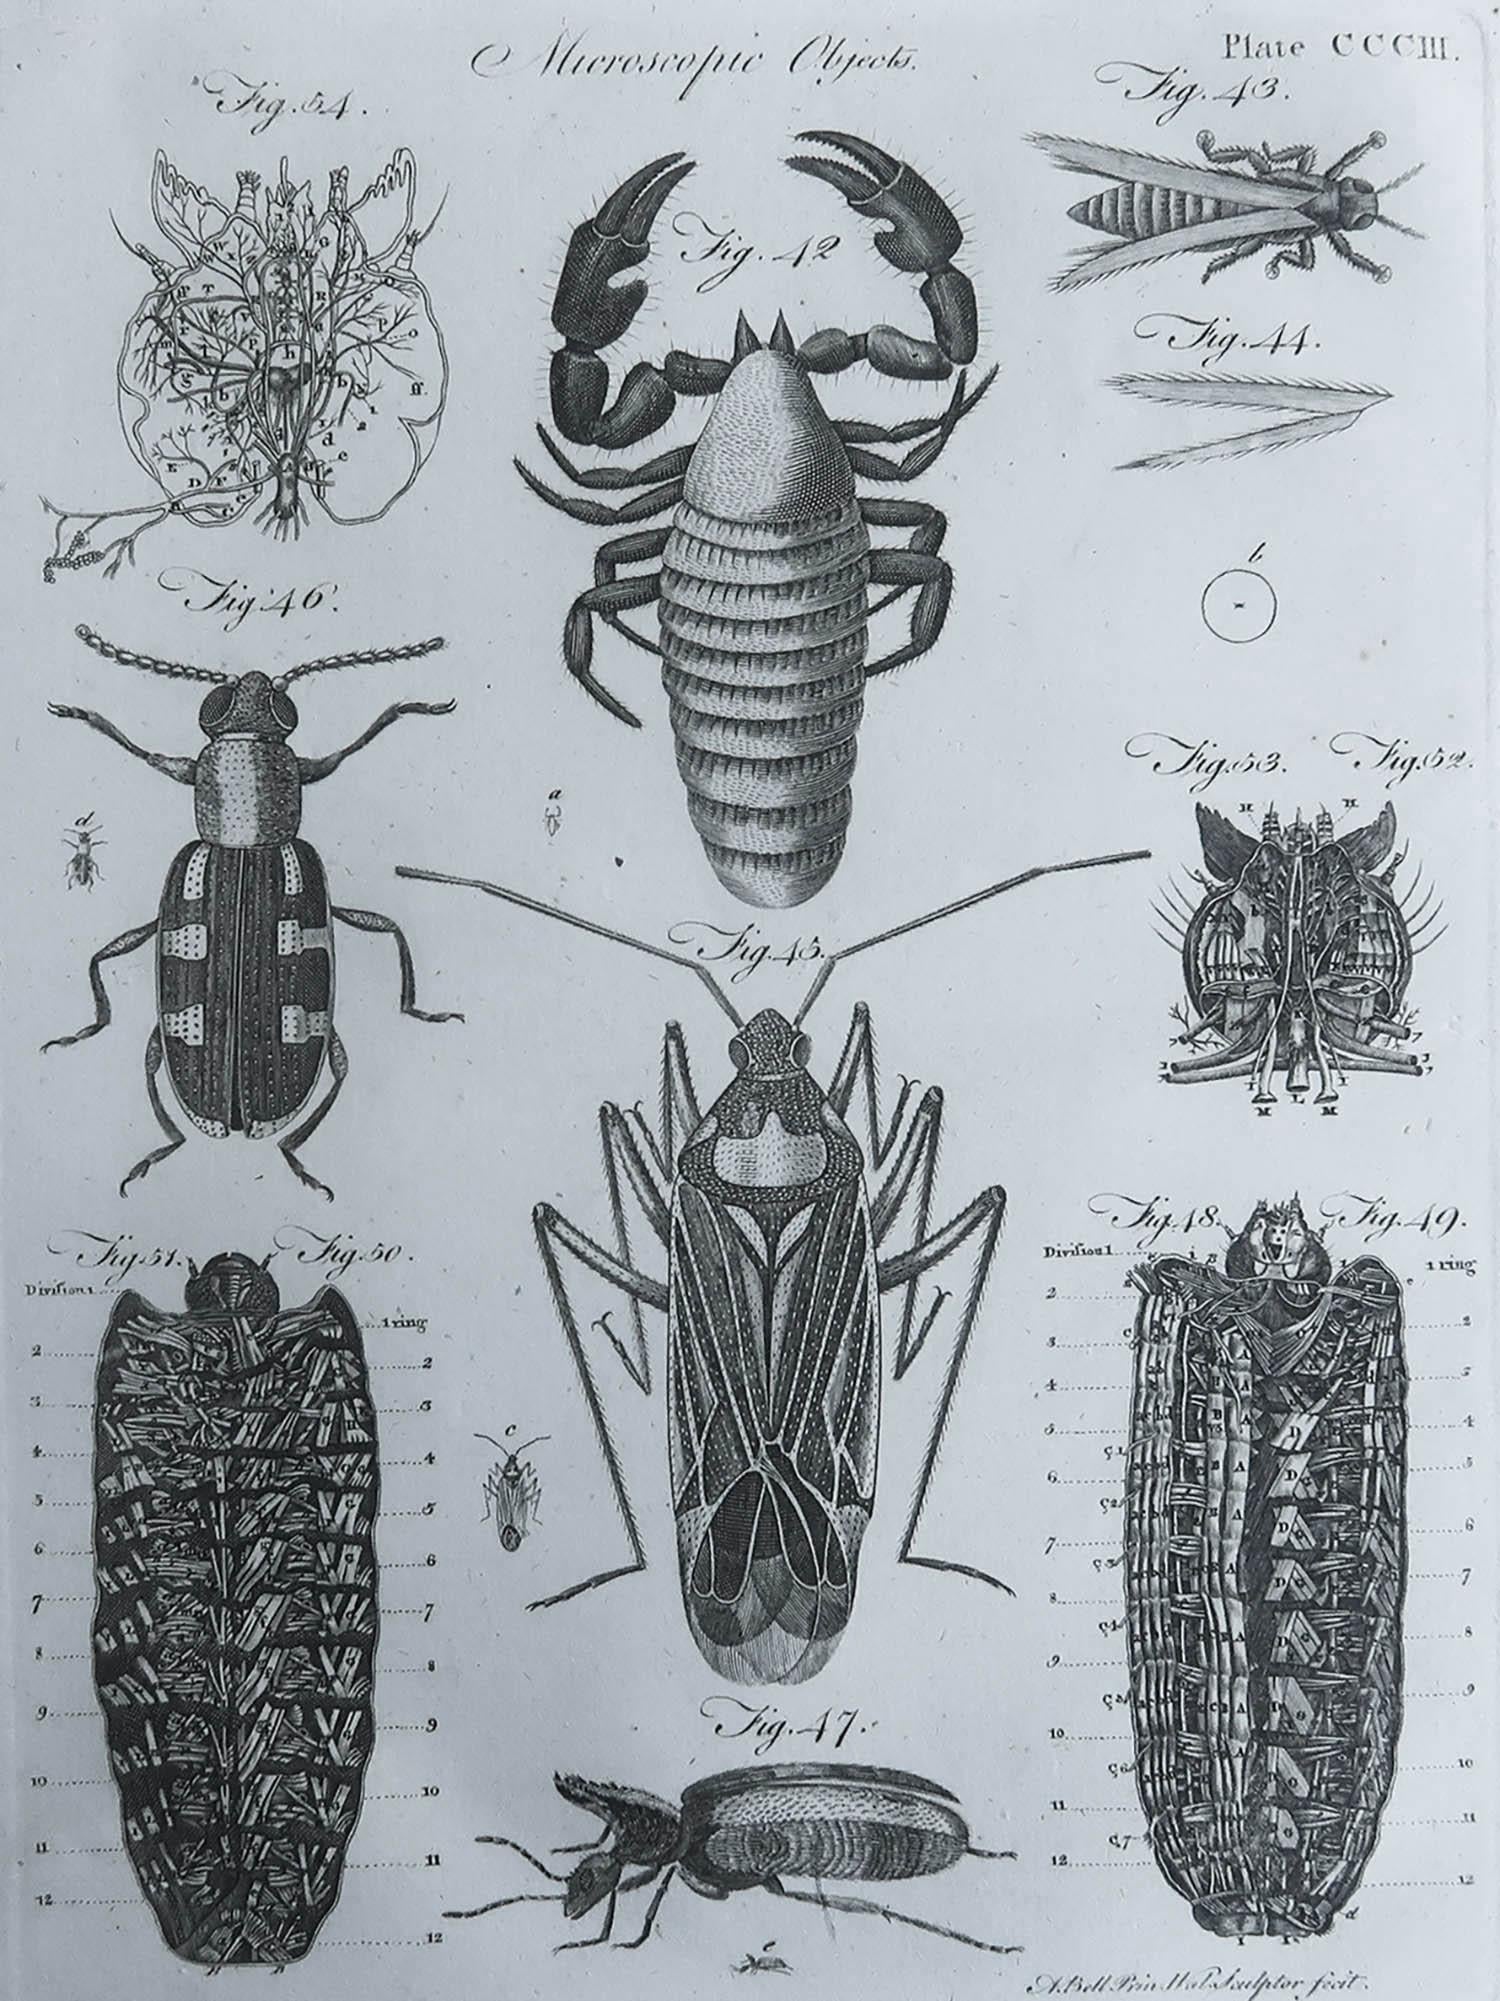 Tolles Bild von Käfern

Kupferstich

Gezeichnet und gestochen von A. Bell

Veröffentlicht C.1790

Ungerahmt.

Kostenloser Versand. 



